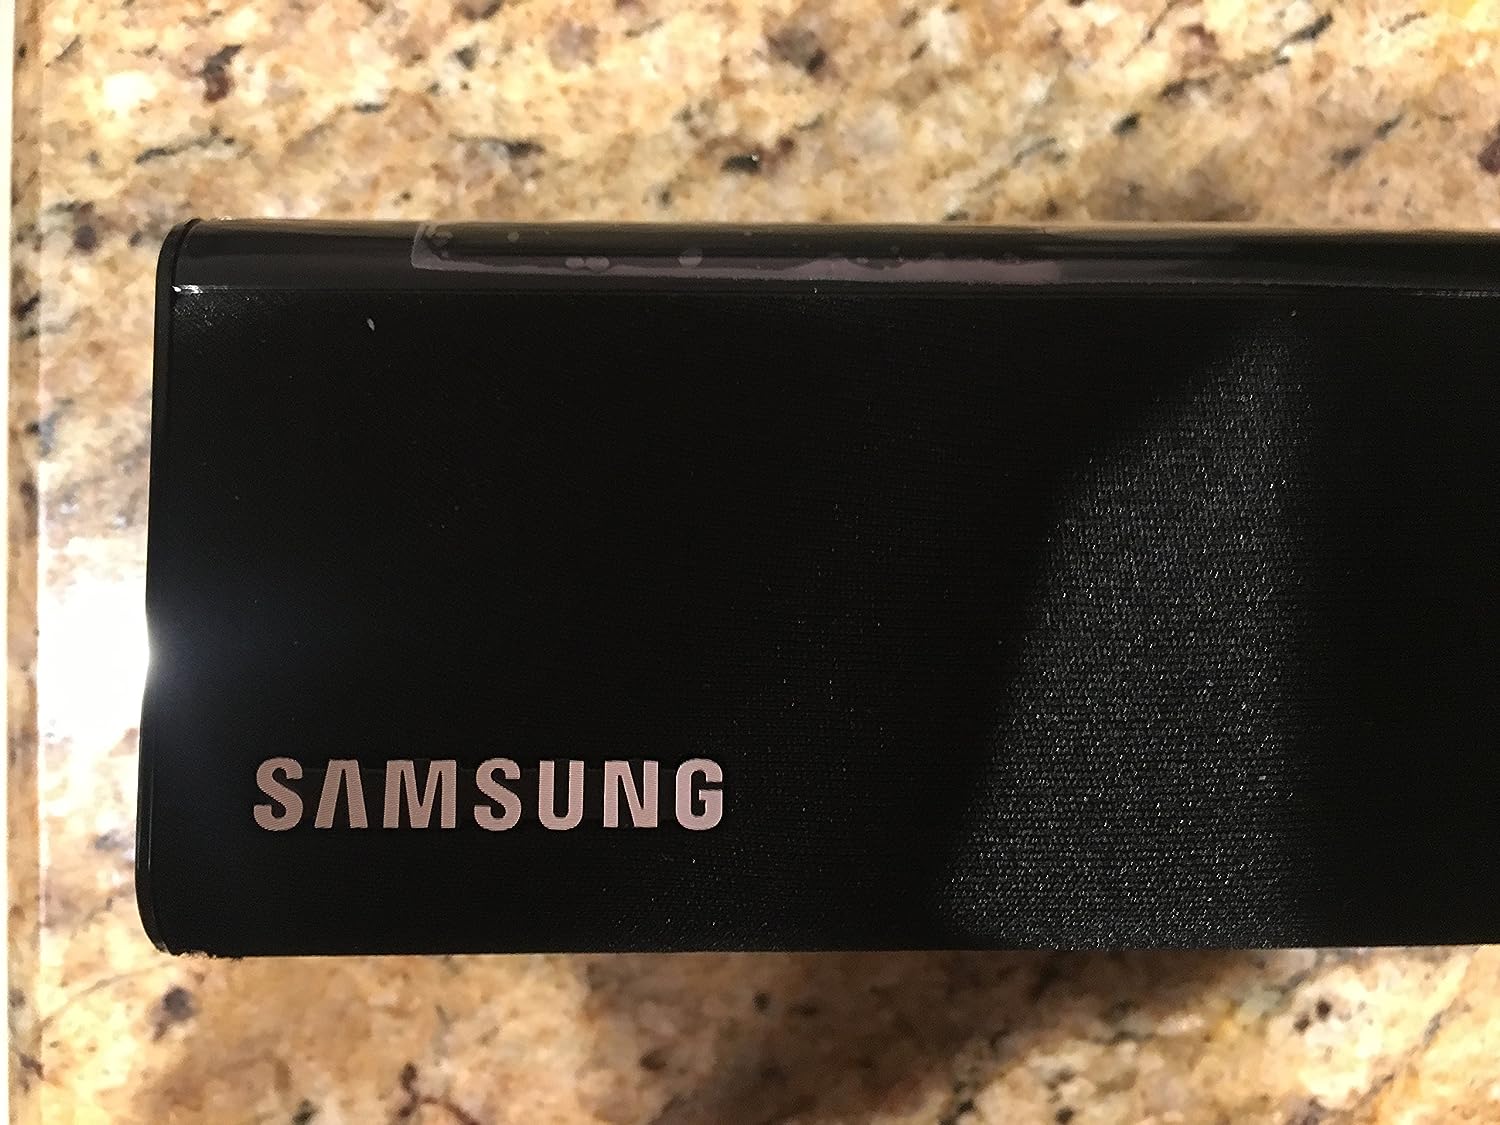 Samsung Hw-fm35 Sound Bar